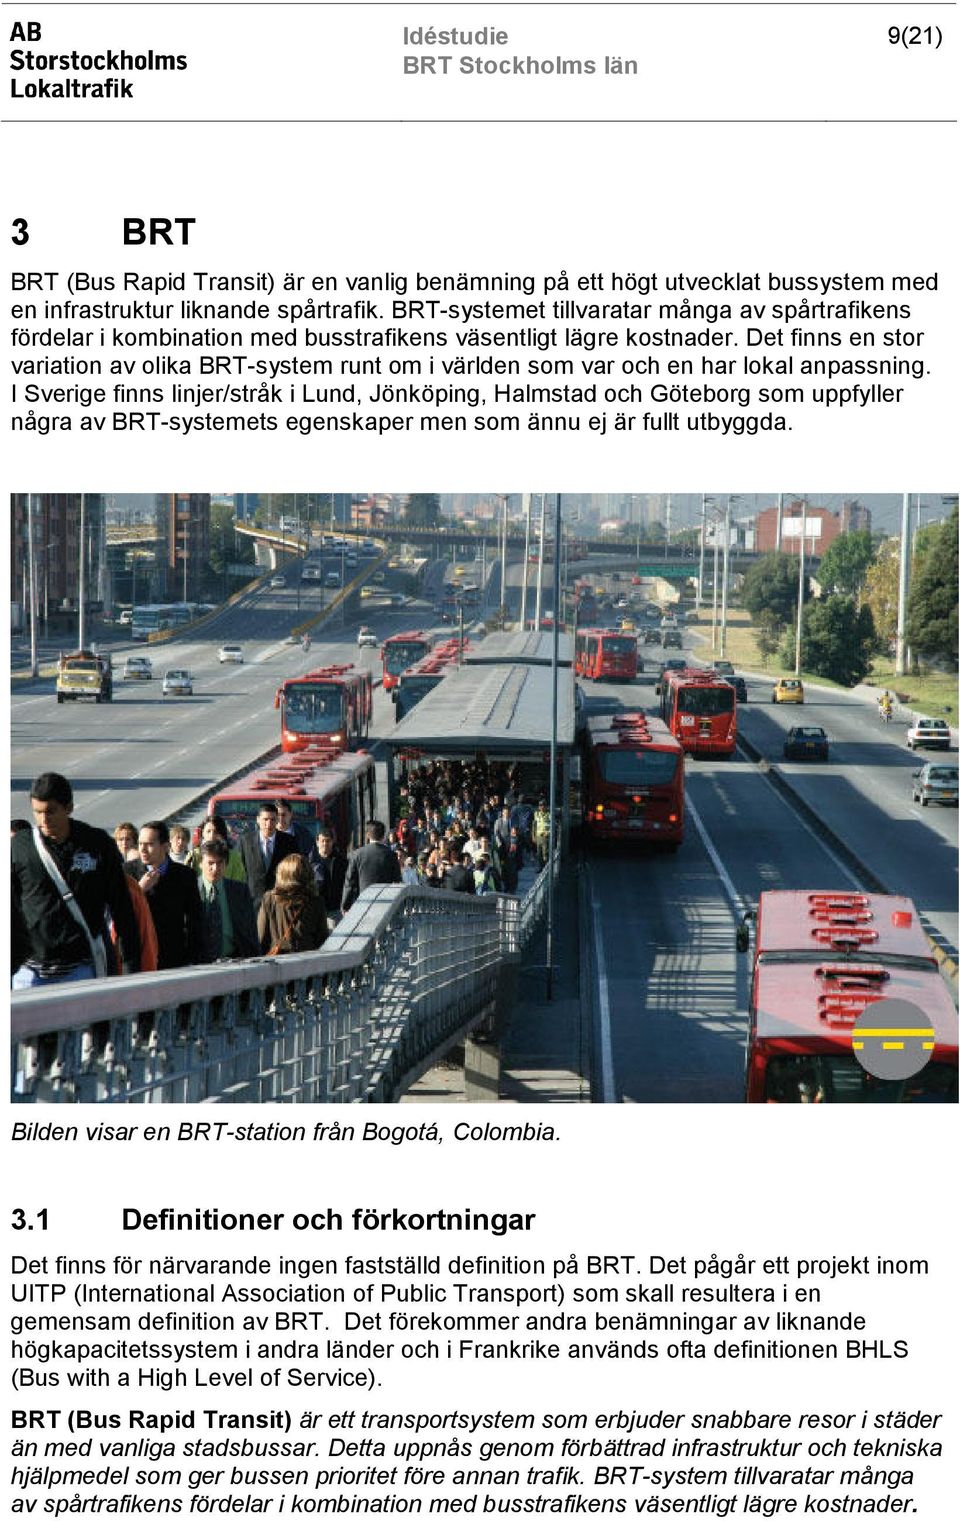 Det finns en stor variation av olika BRT-system runt om i världen som var och en har lokal anpassning.